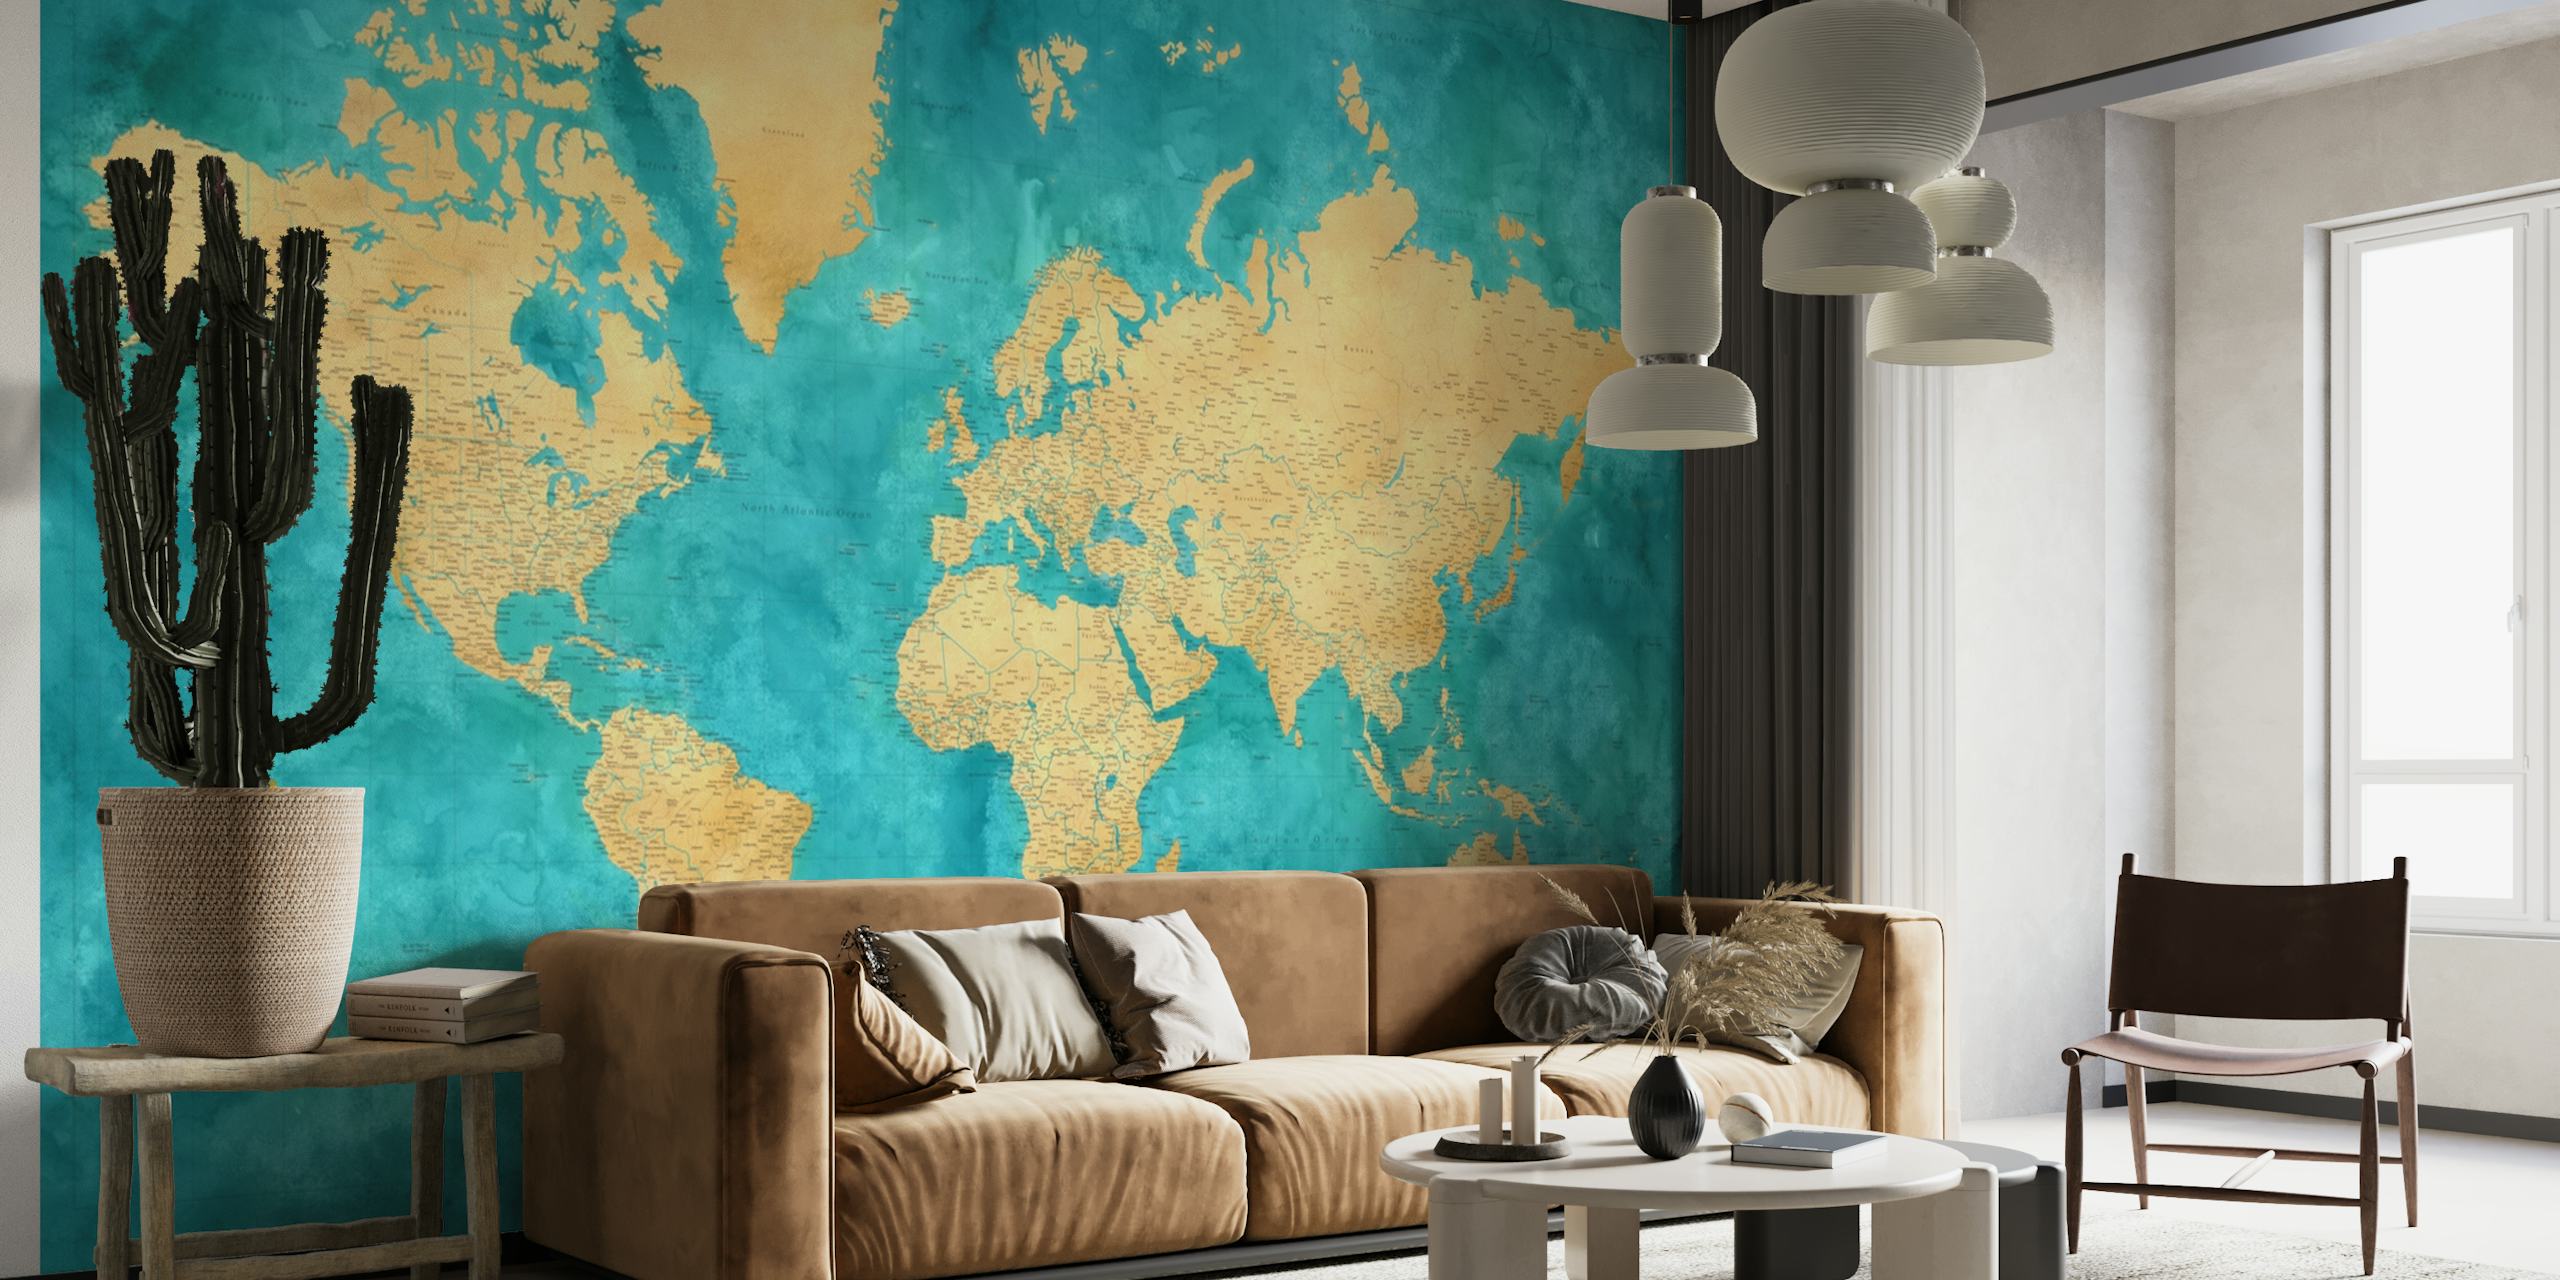 Erittäin yksityiskohtainen maailmankartta Lexy-seinämaalaus turkoosilla akvarellitaustalla